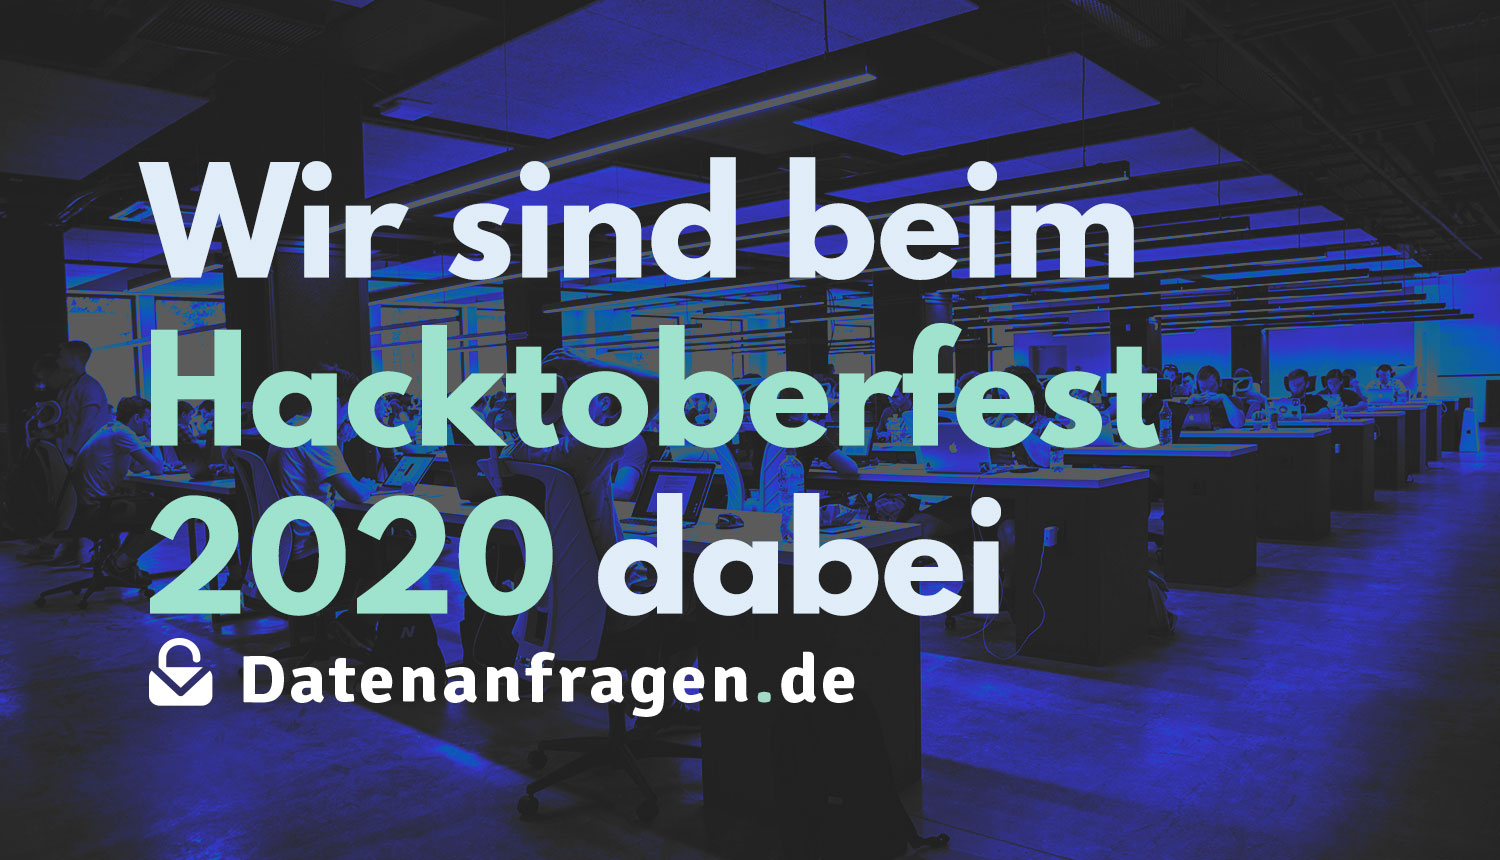 Hacktoberfest 2020 + Datenanfragen.de e. V.